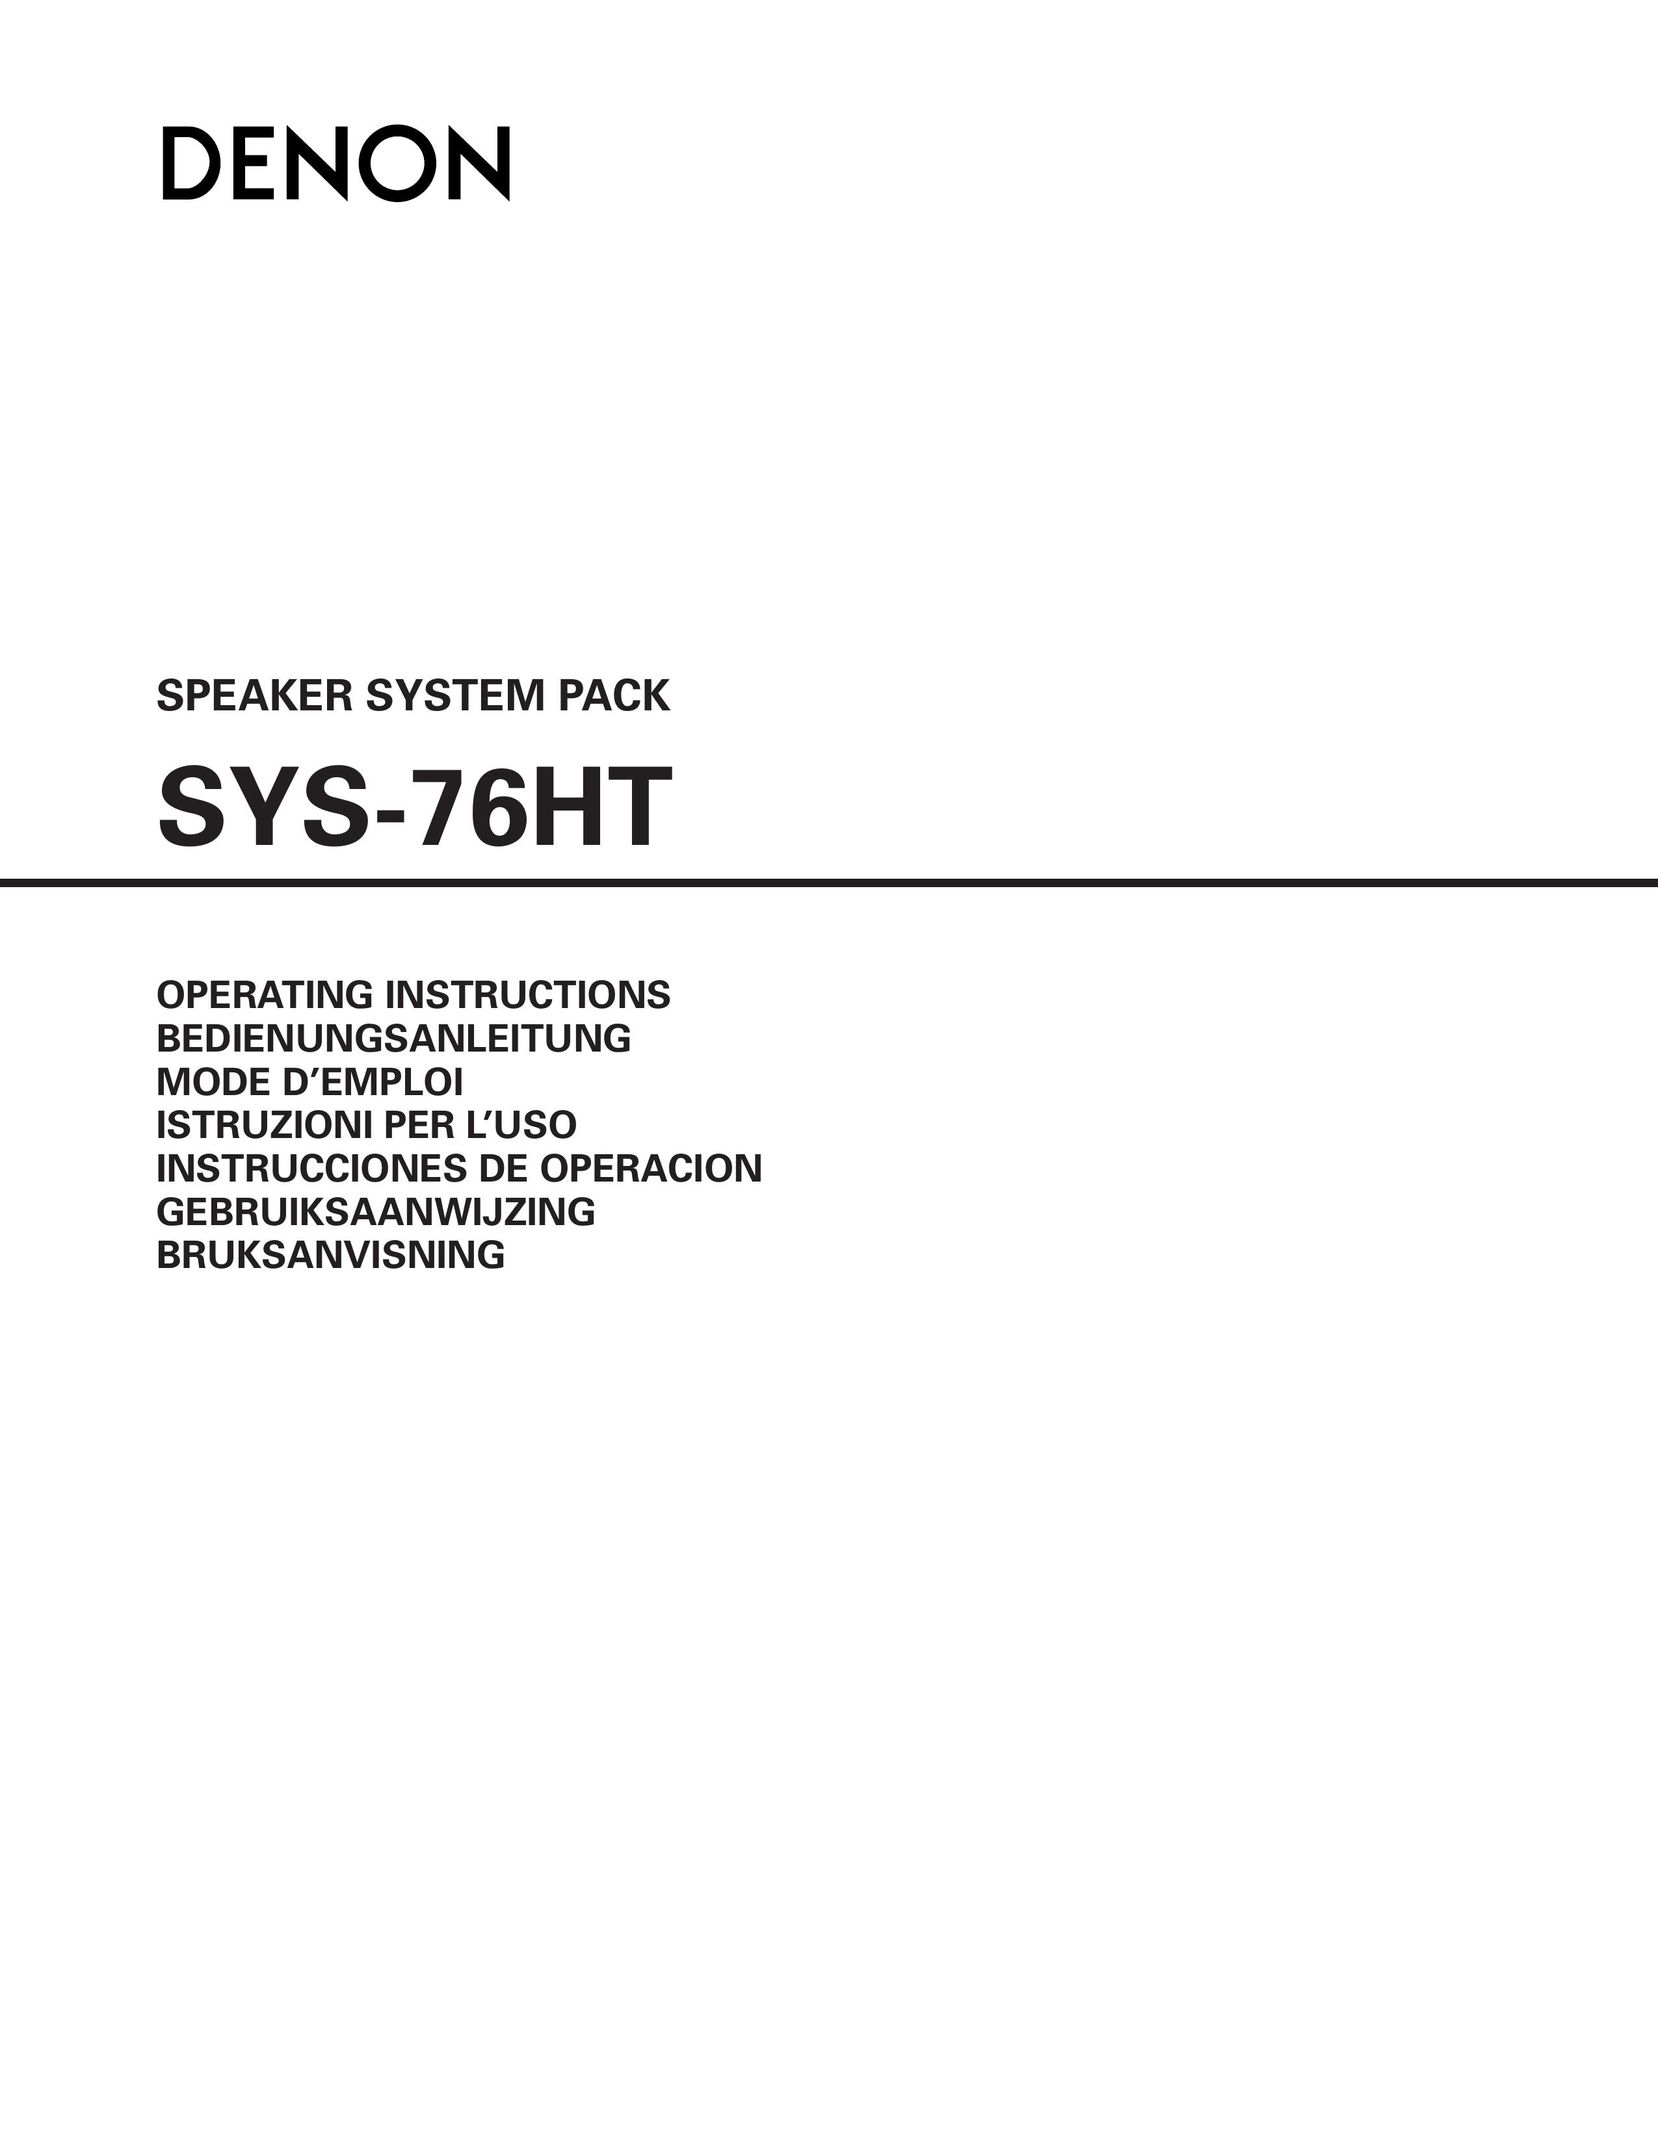 Denon SYS-76HT Speaker System User Manual